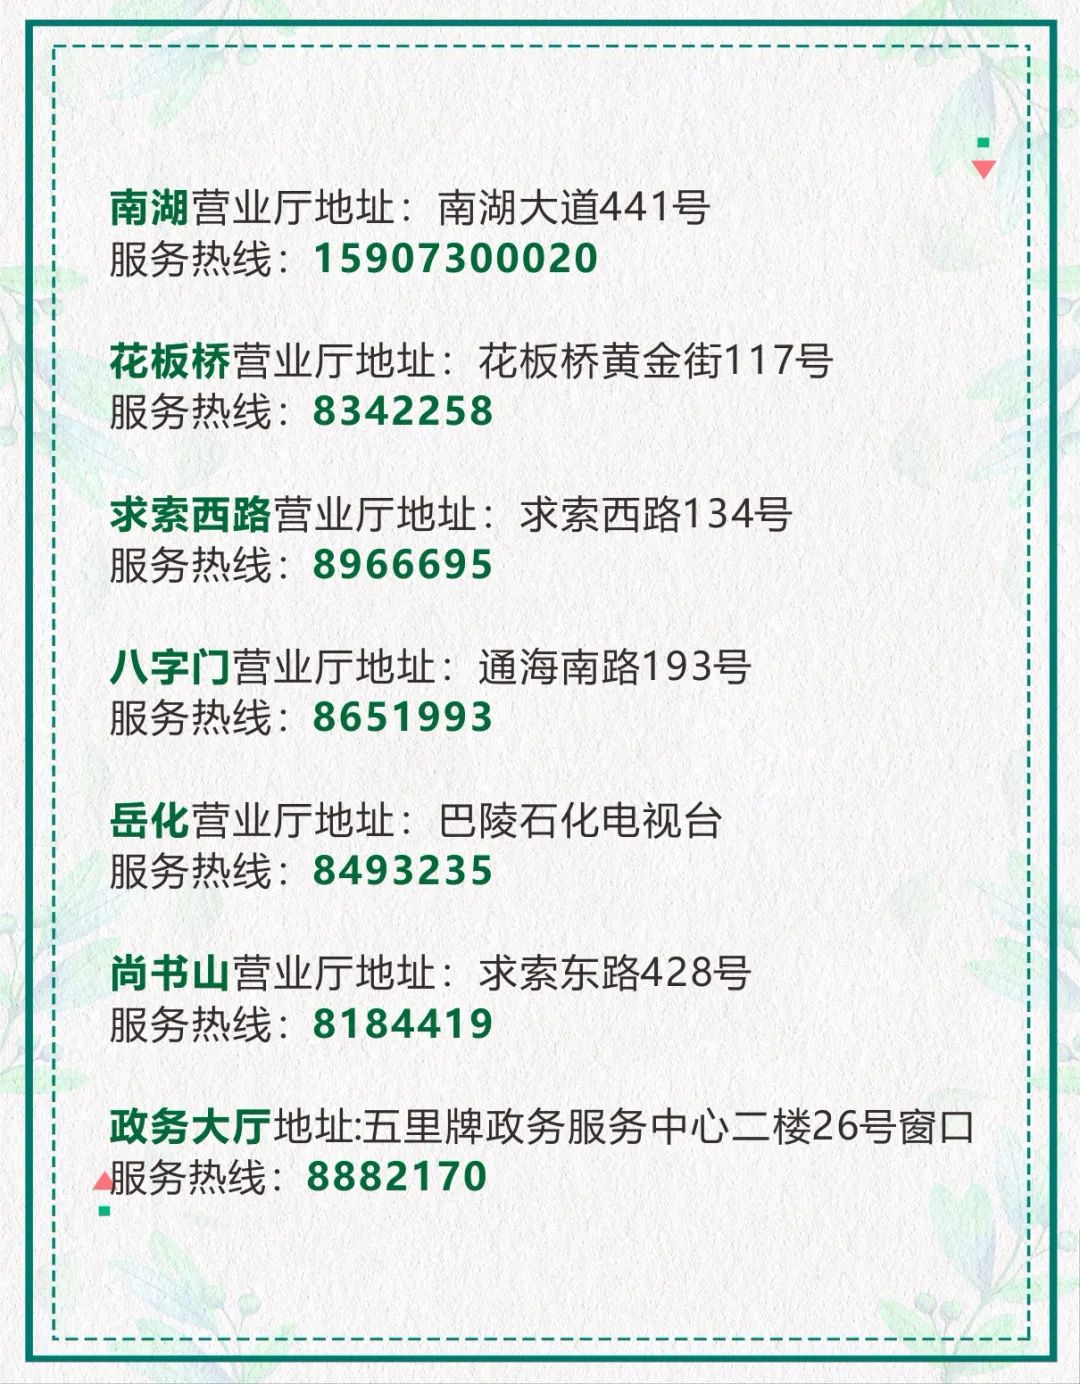 重要通知岳阳广电网络客服4月2日正式启用96531